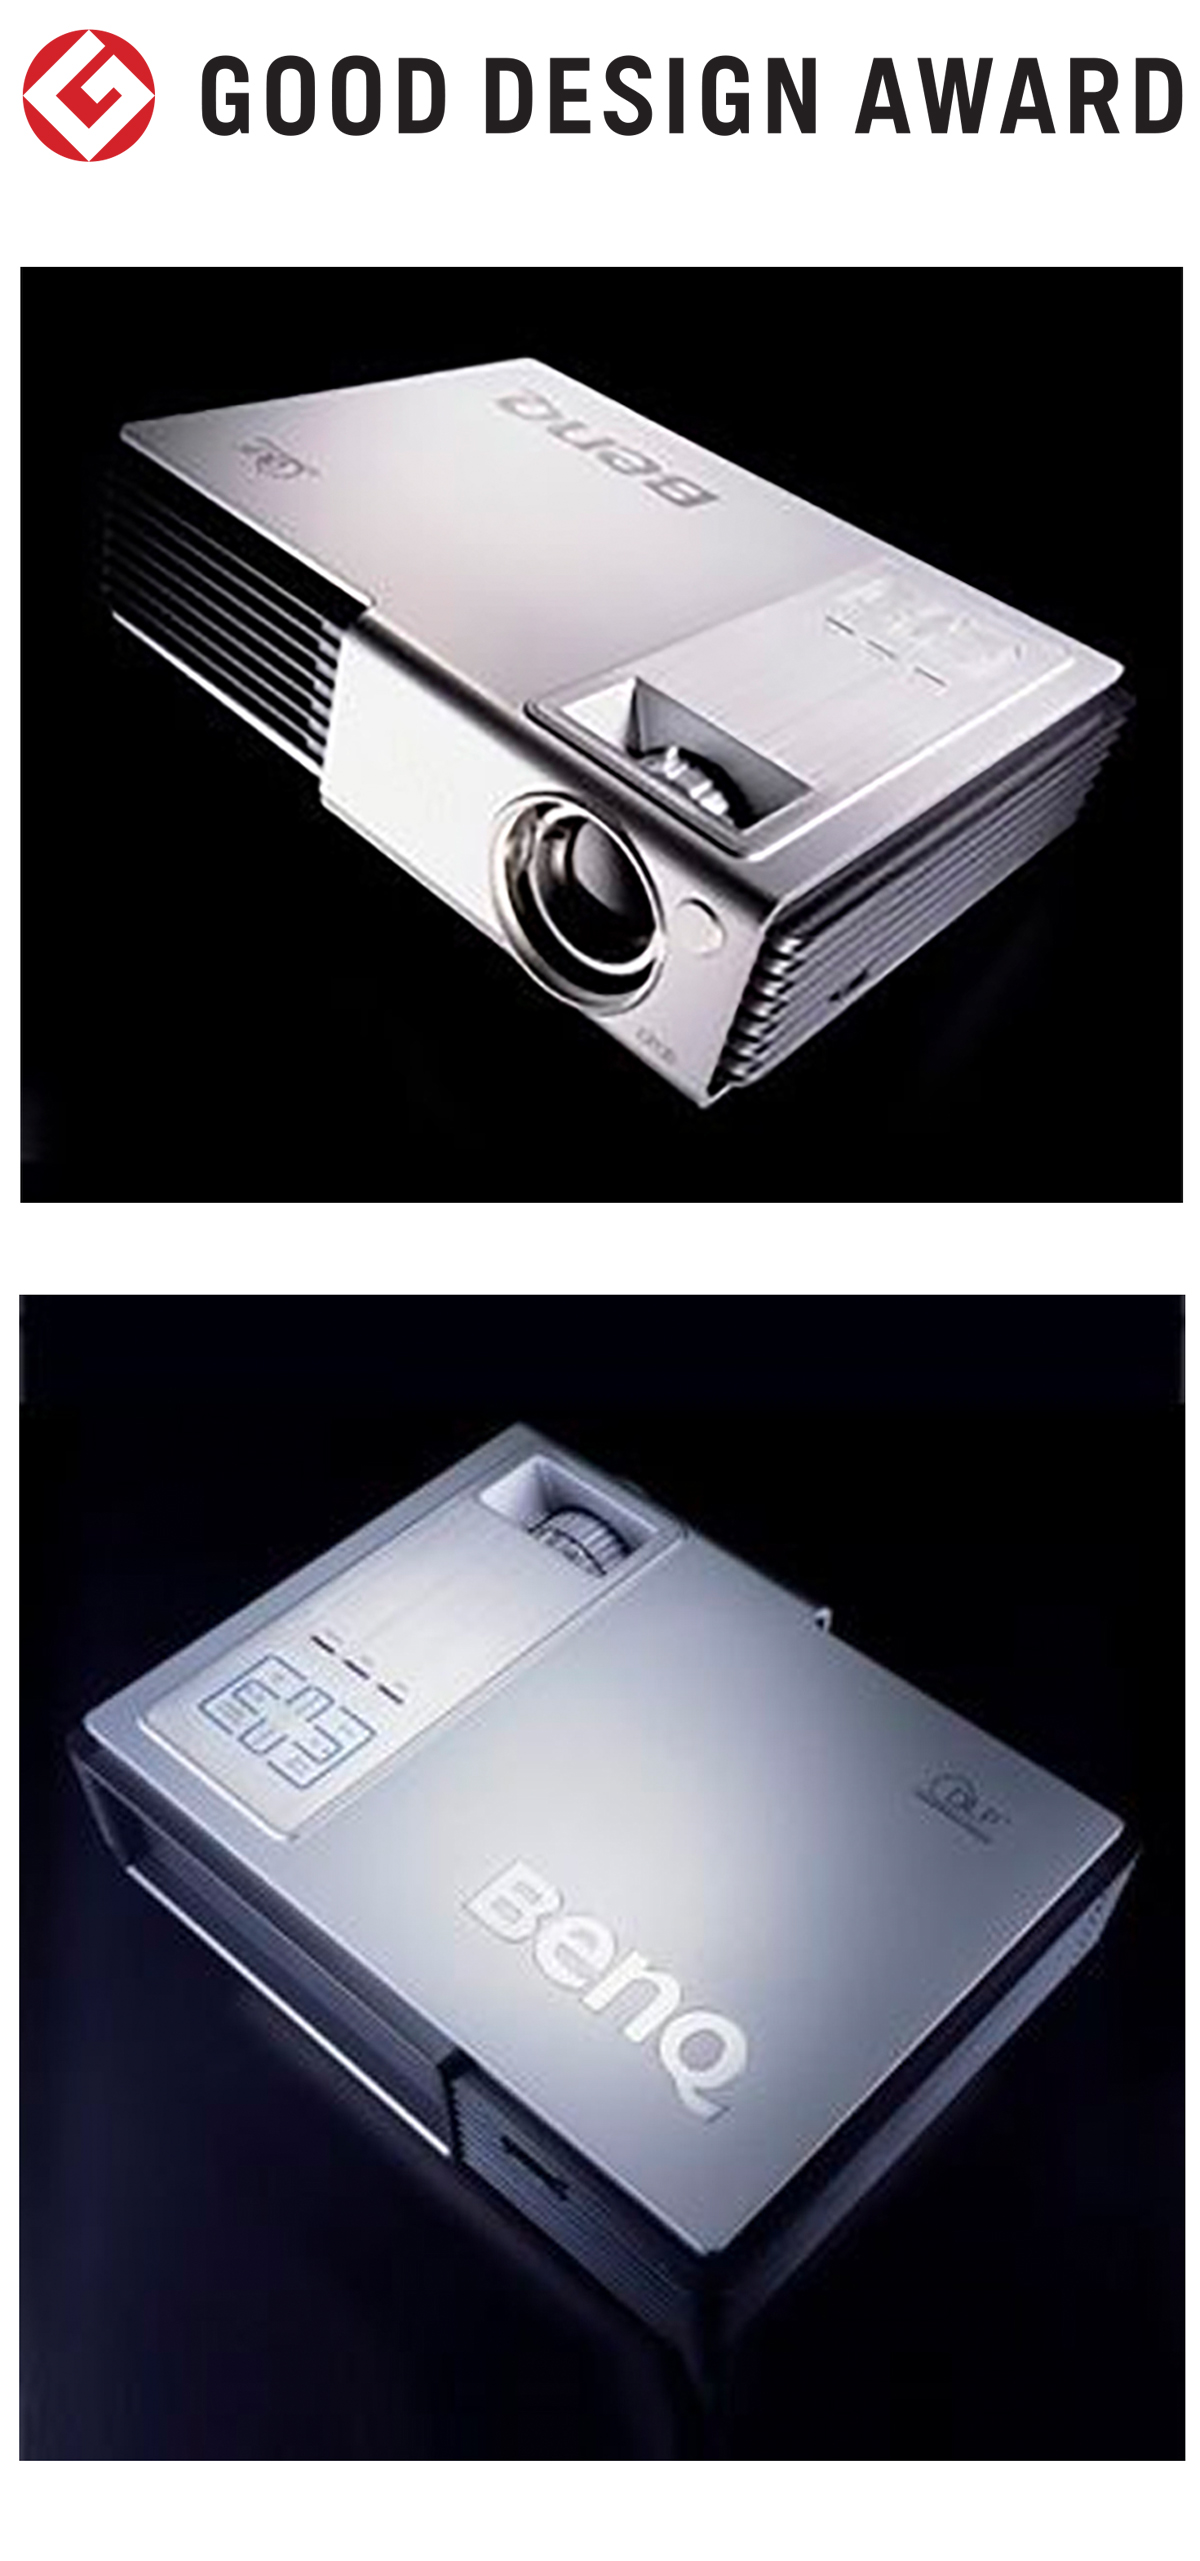 【日本】明基BenQ商务投影仪CP120获颁2007年度G-Mark设计大奖（GOOD DESIGN AWARD 2007）